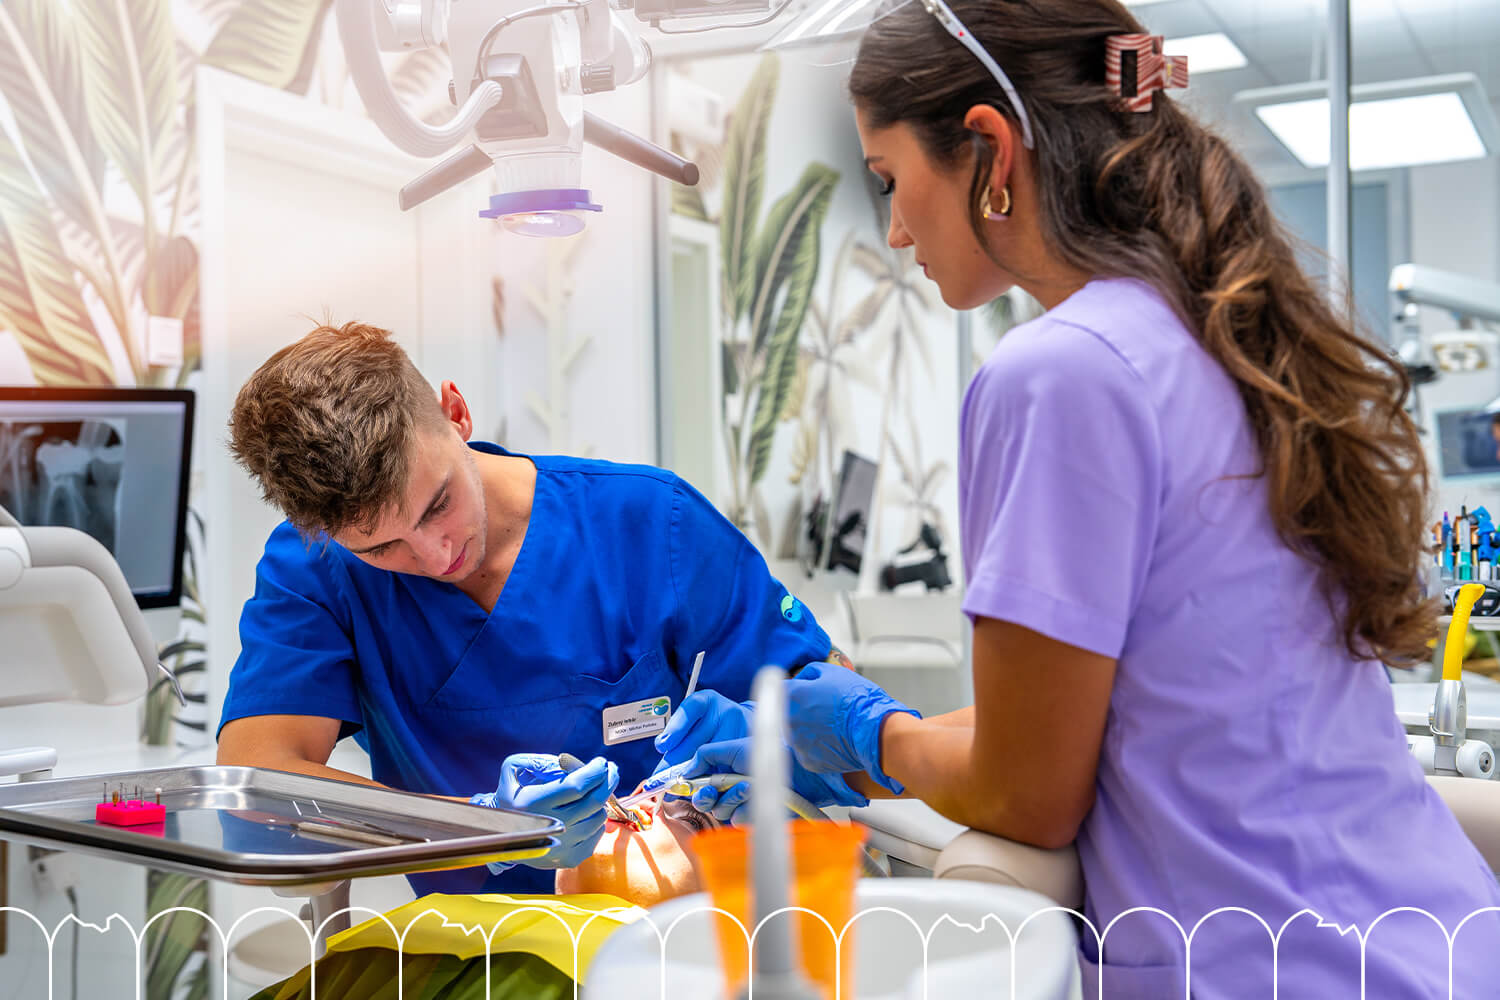 Záchovná stomatológia | Bratislava | Dental Centrum NIVY